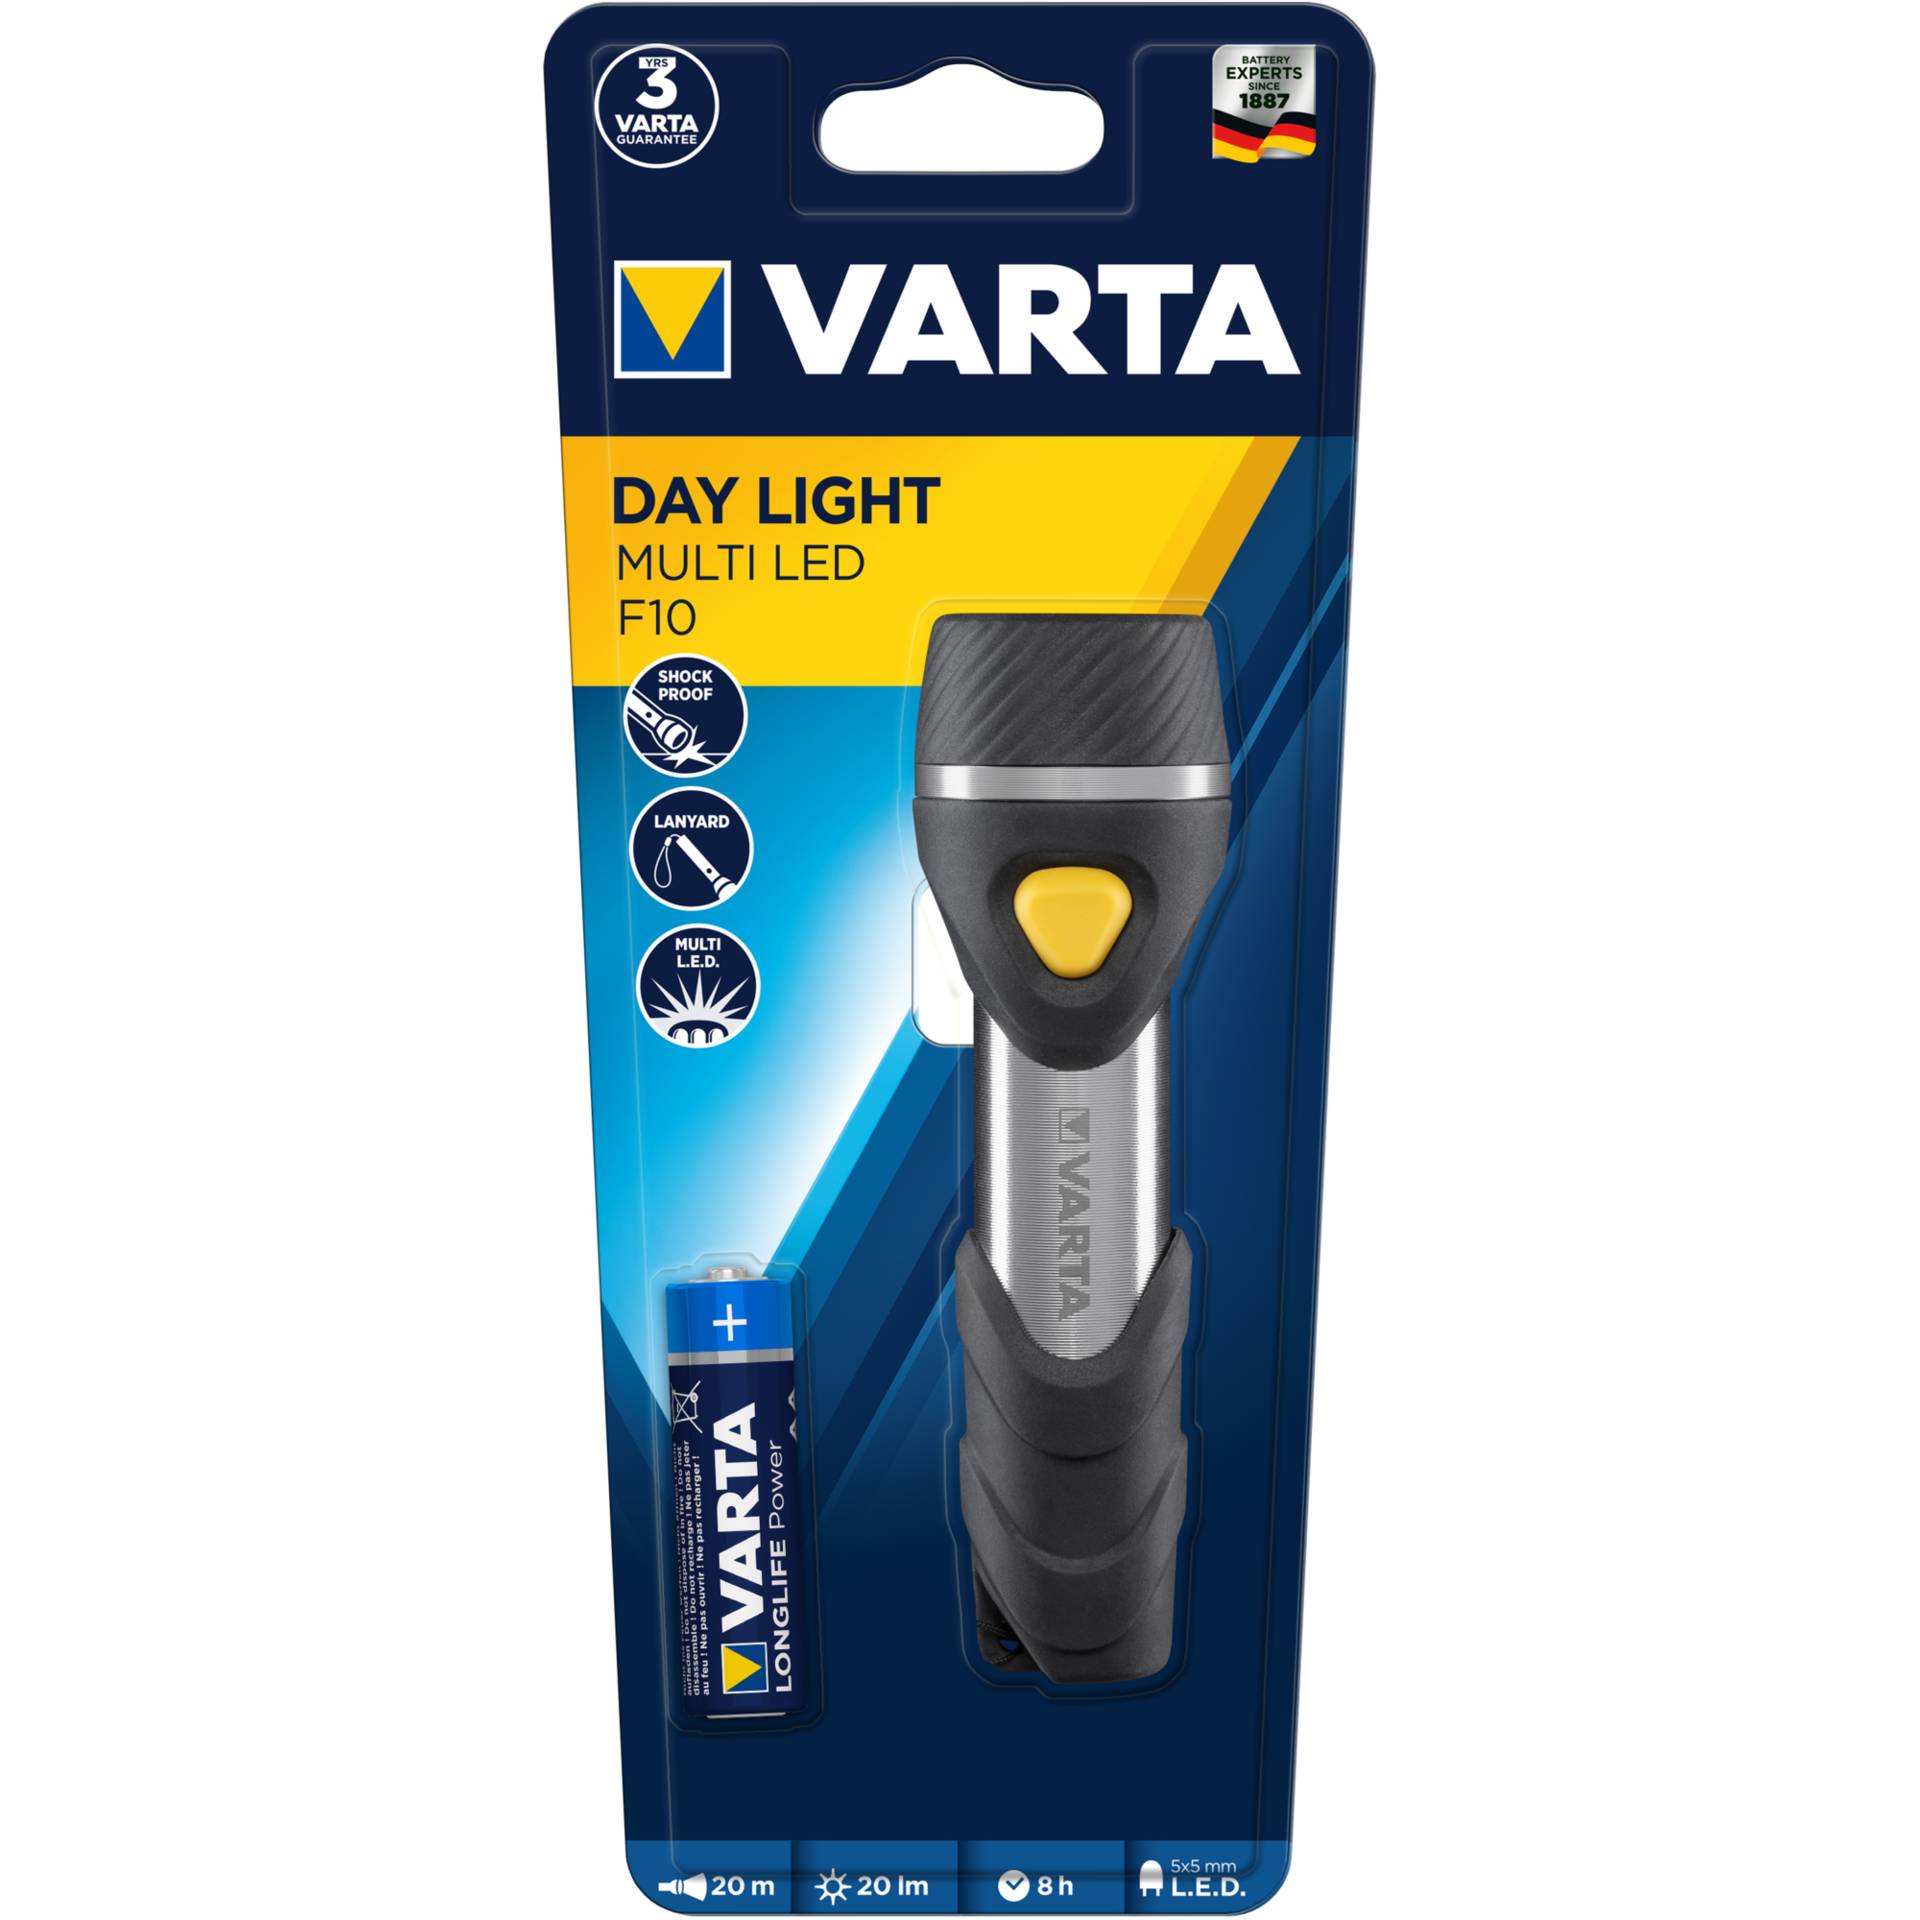 Varta Day Light Multi LED F10 torcia con 5 x 5mm LEDs